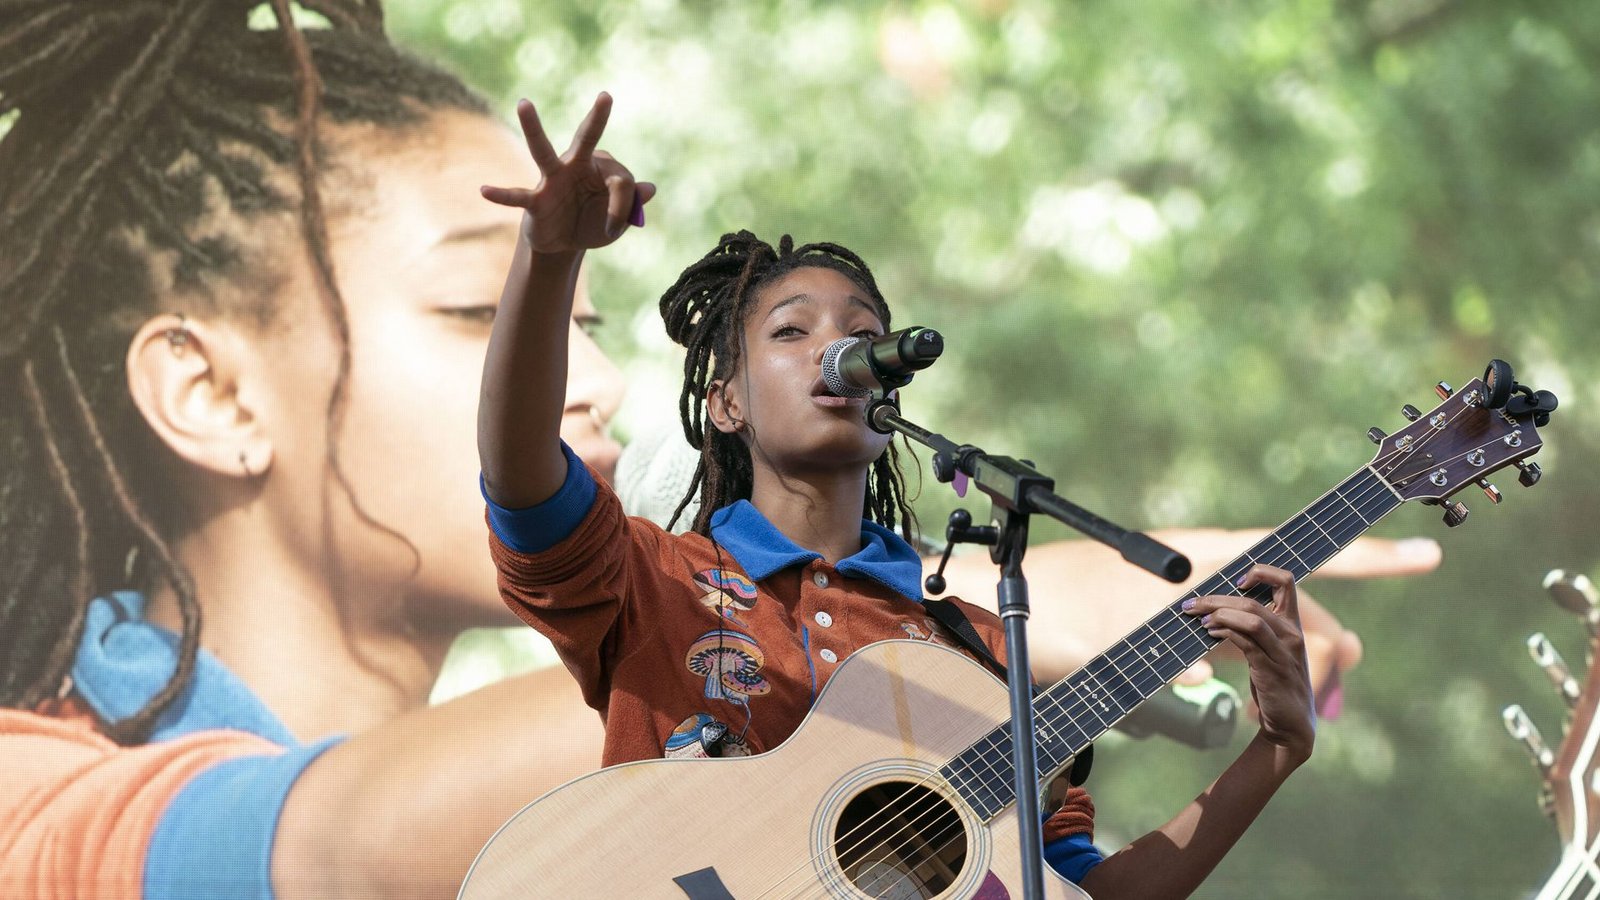 Smiths Tochter Willow will als Sängerin erfolgreich werden.Foto: IMAGO / Pacific Press Agency